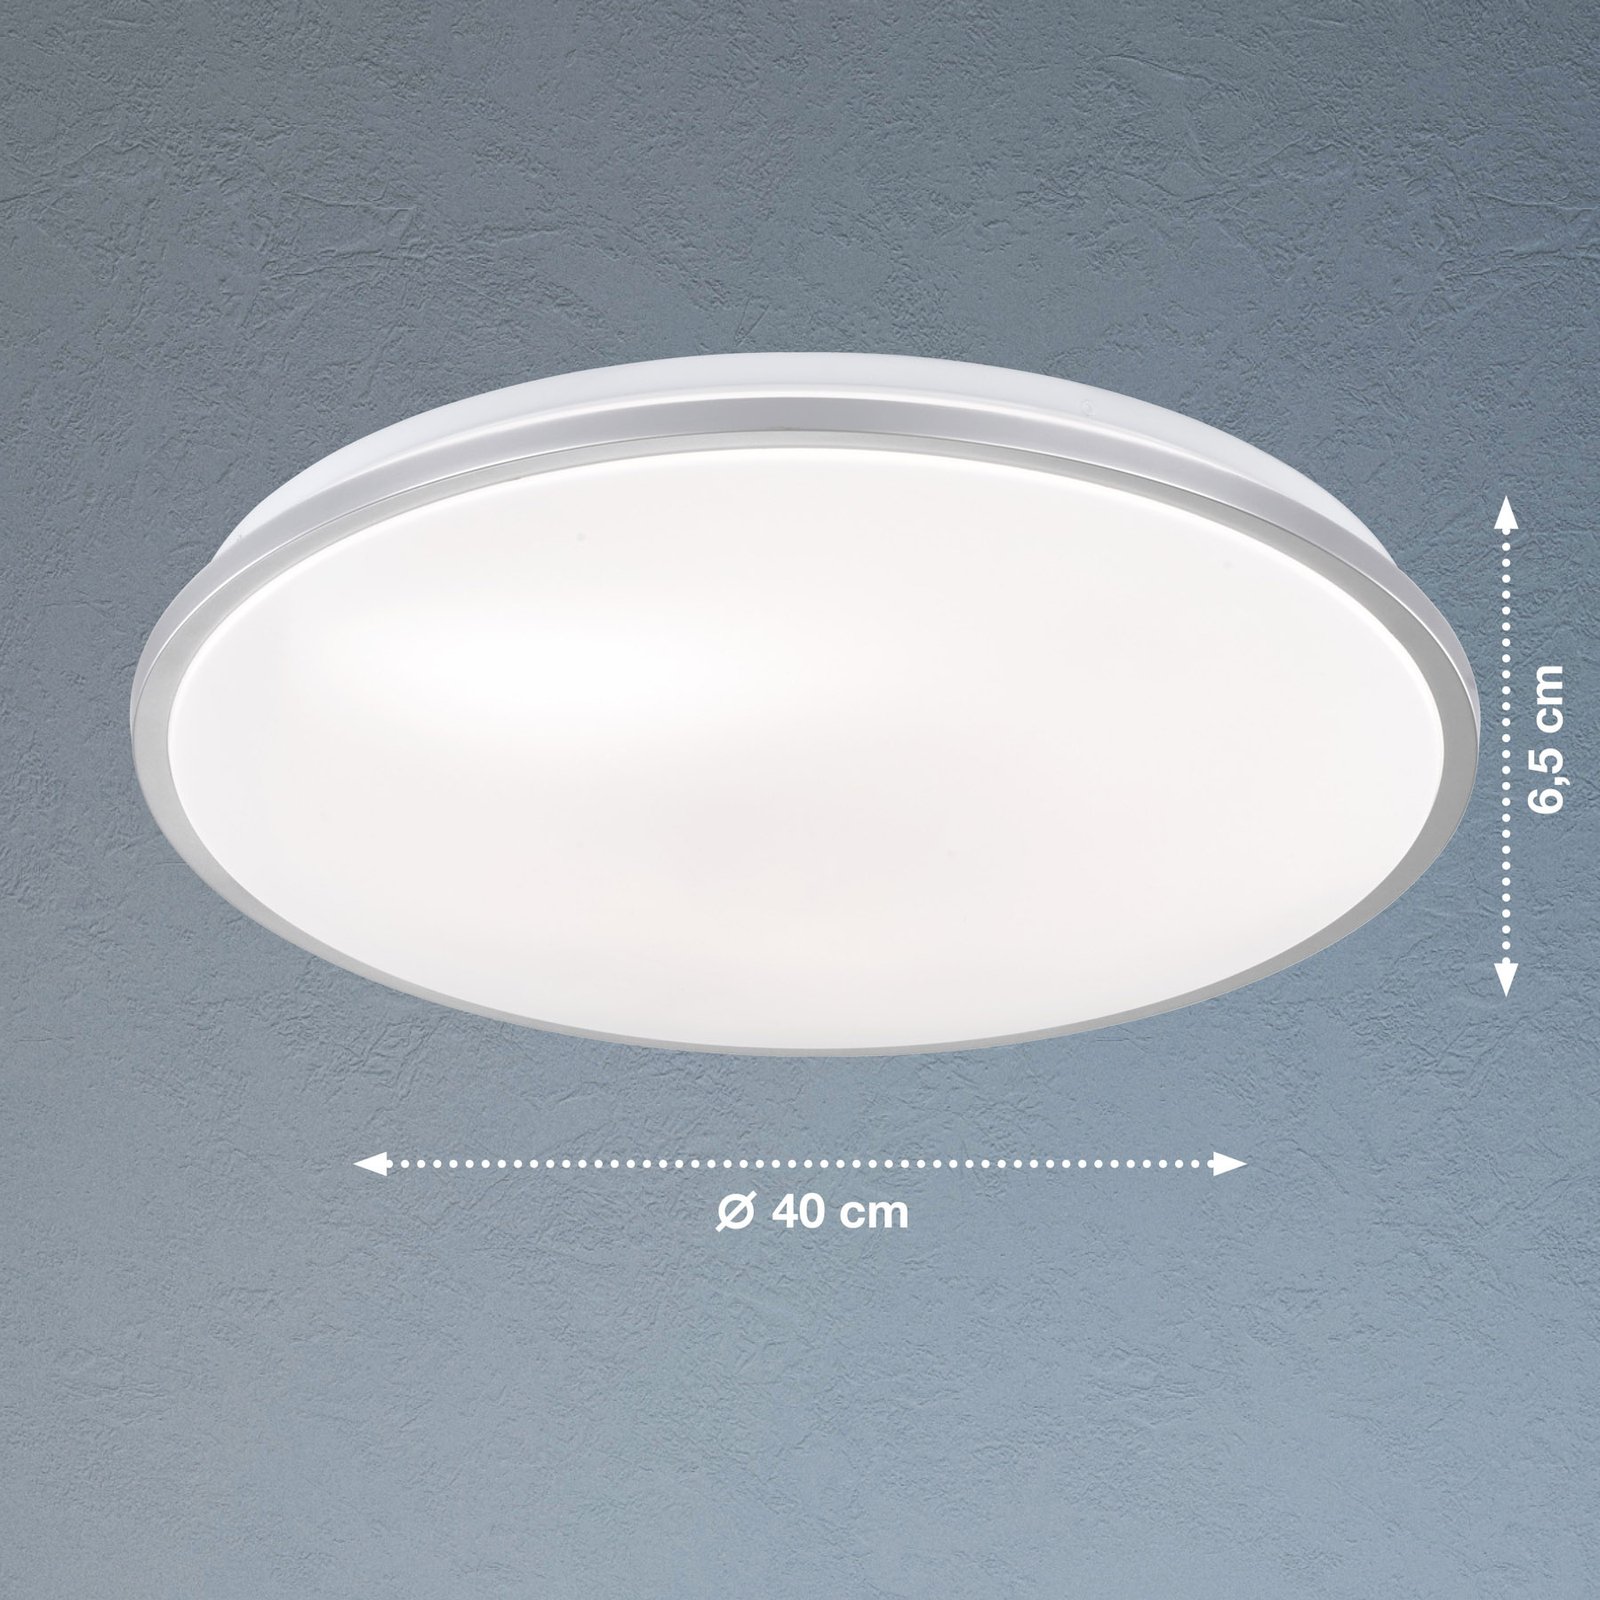 Jaso LED plafondlamp, dimbaar, Ø 40 cm, zilver